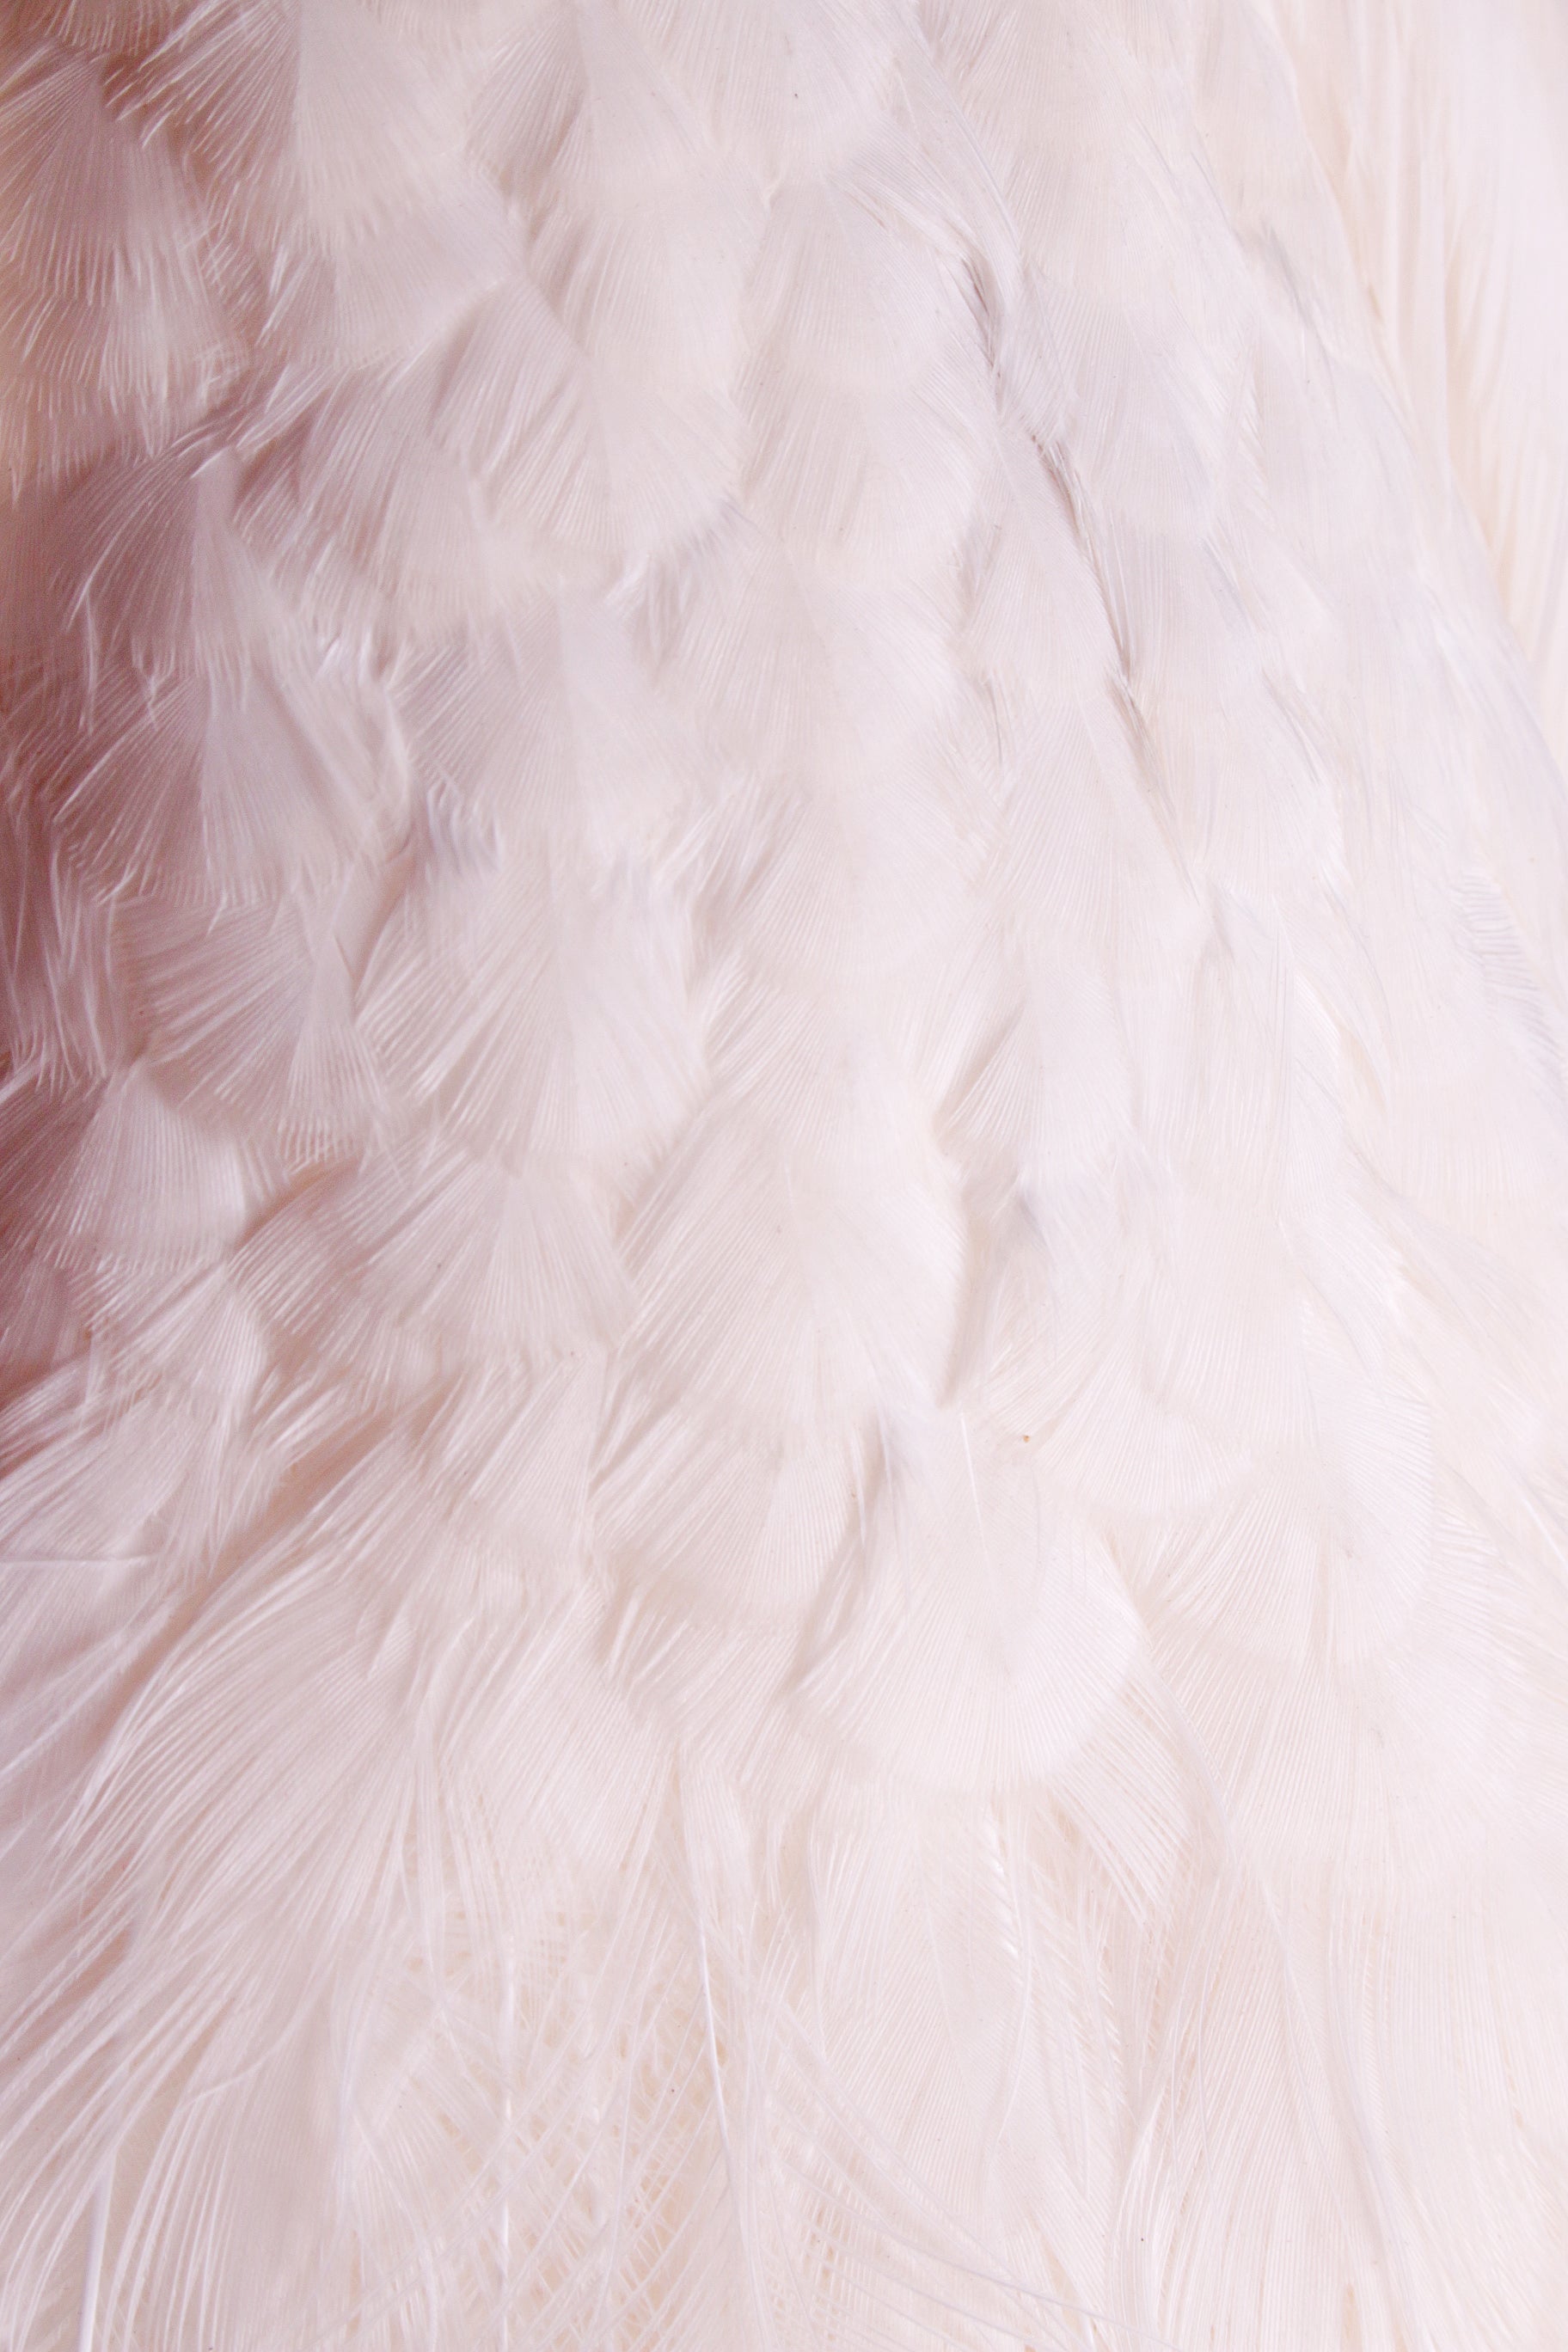 Mooie Sierlijke Opgezette witte pauw close-up veren rug